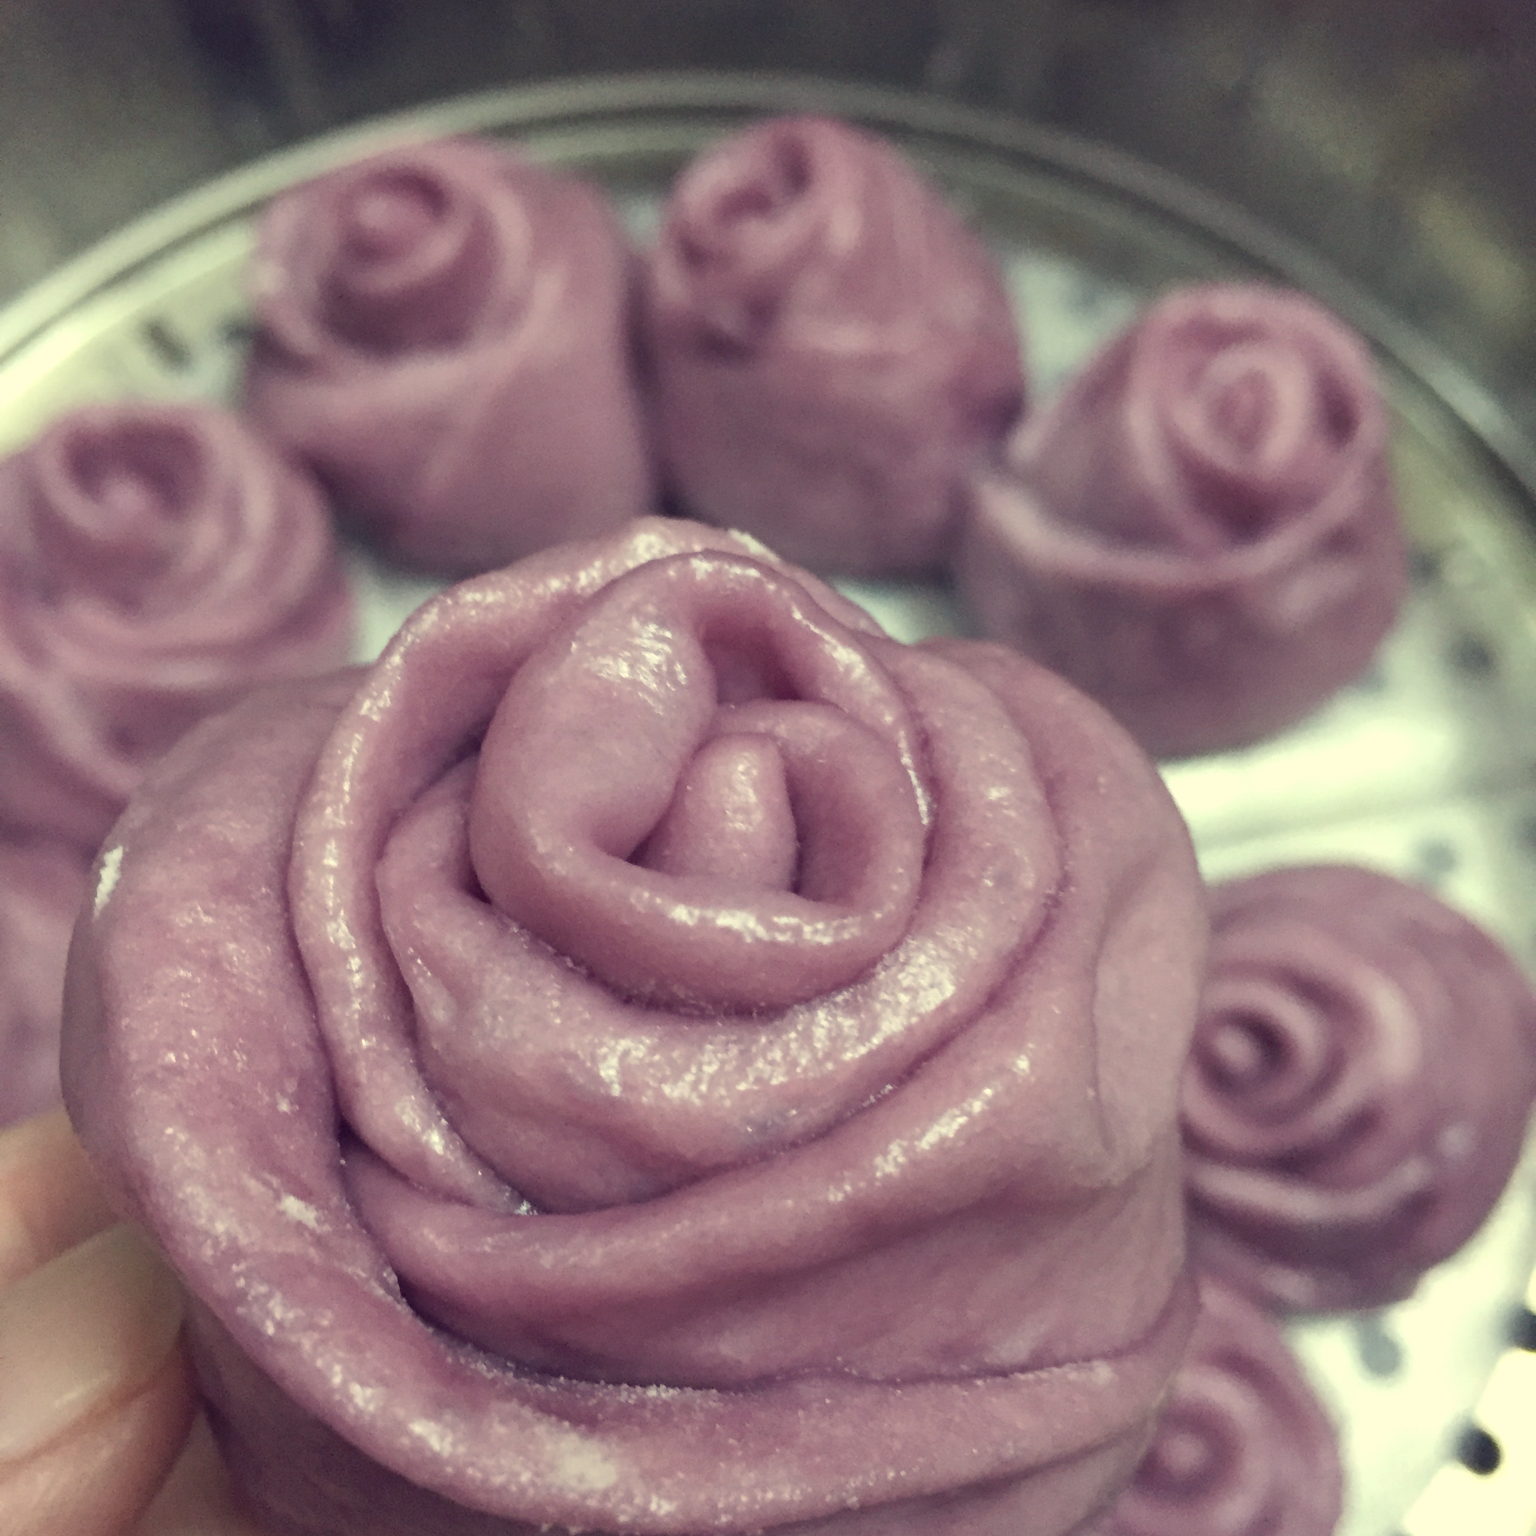 紫薯玫瑰花卷馒头